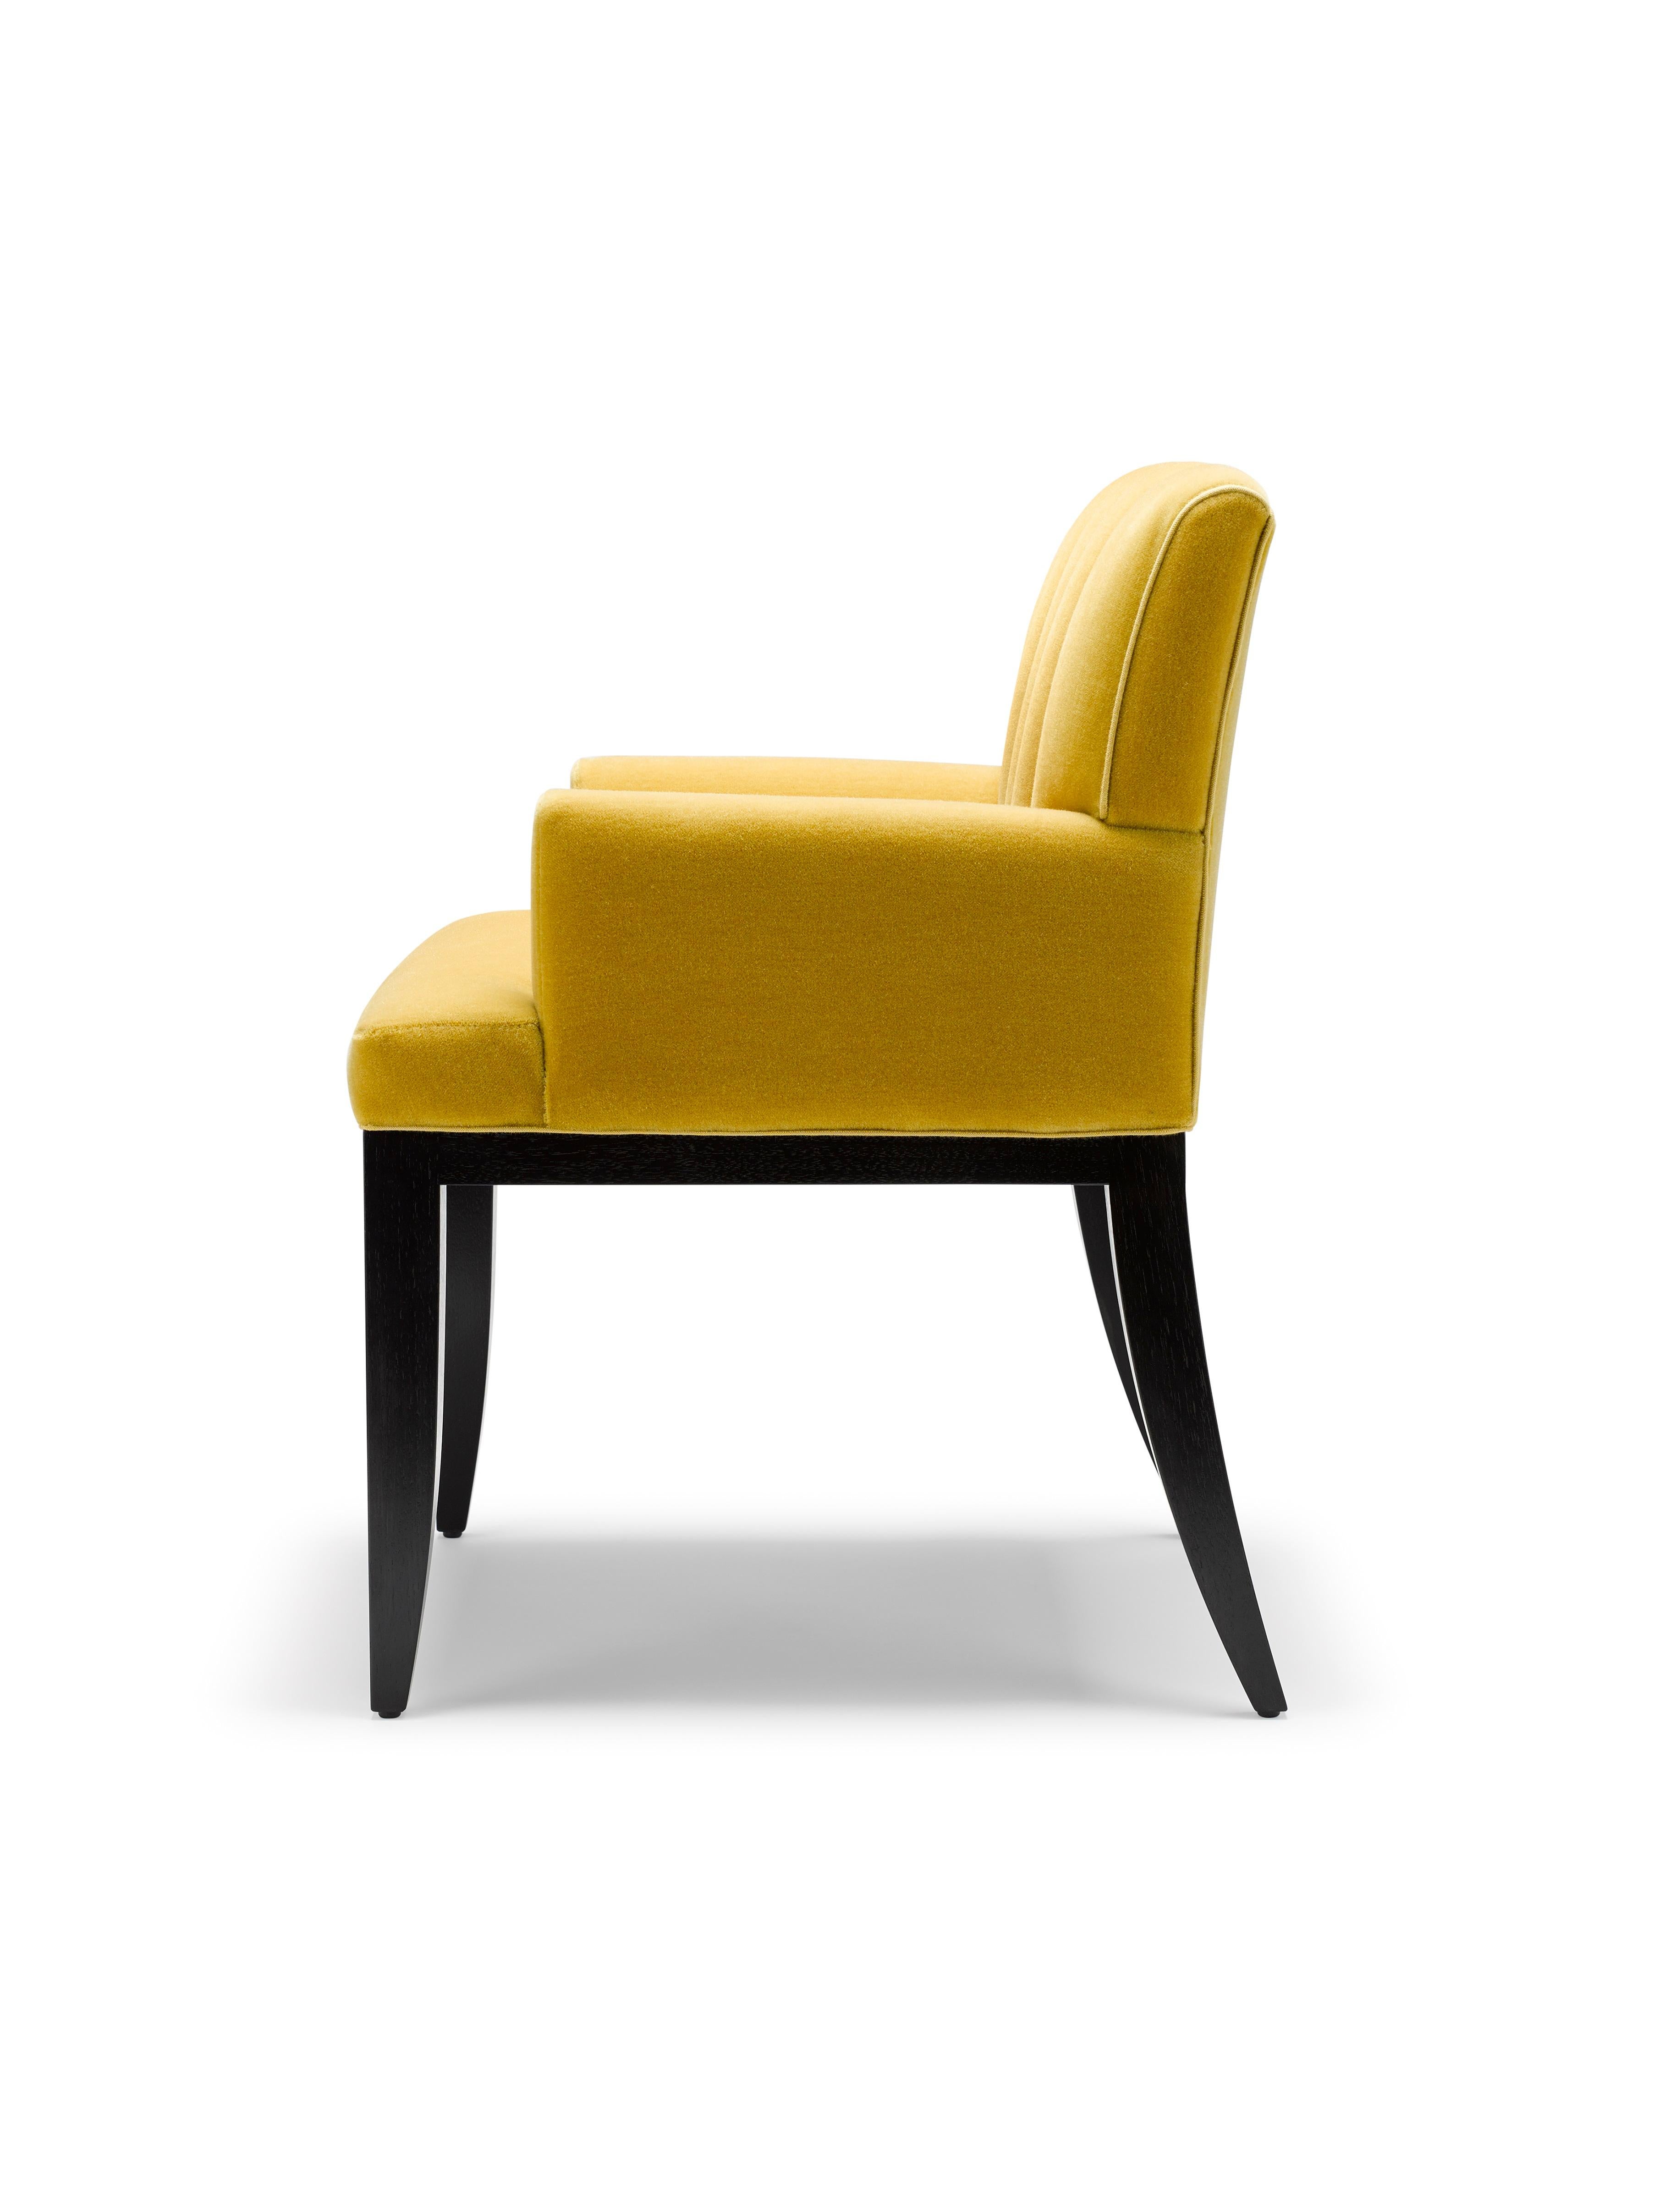 Der Felix Fluted Chair ist unsere neue Version des Felix Carver Chair, der durch seine geriffelte Rückenlehne einen Hauch von Eleganz versprüht.

Hier abgebildet mit Grand Mohair von Altfield London in Messing gepolstert, mit Beinen aus schwarz